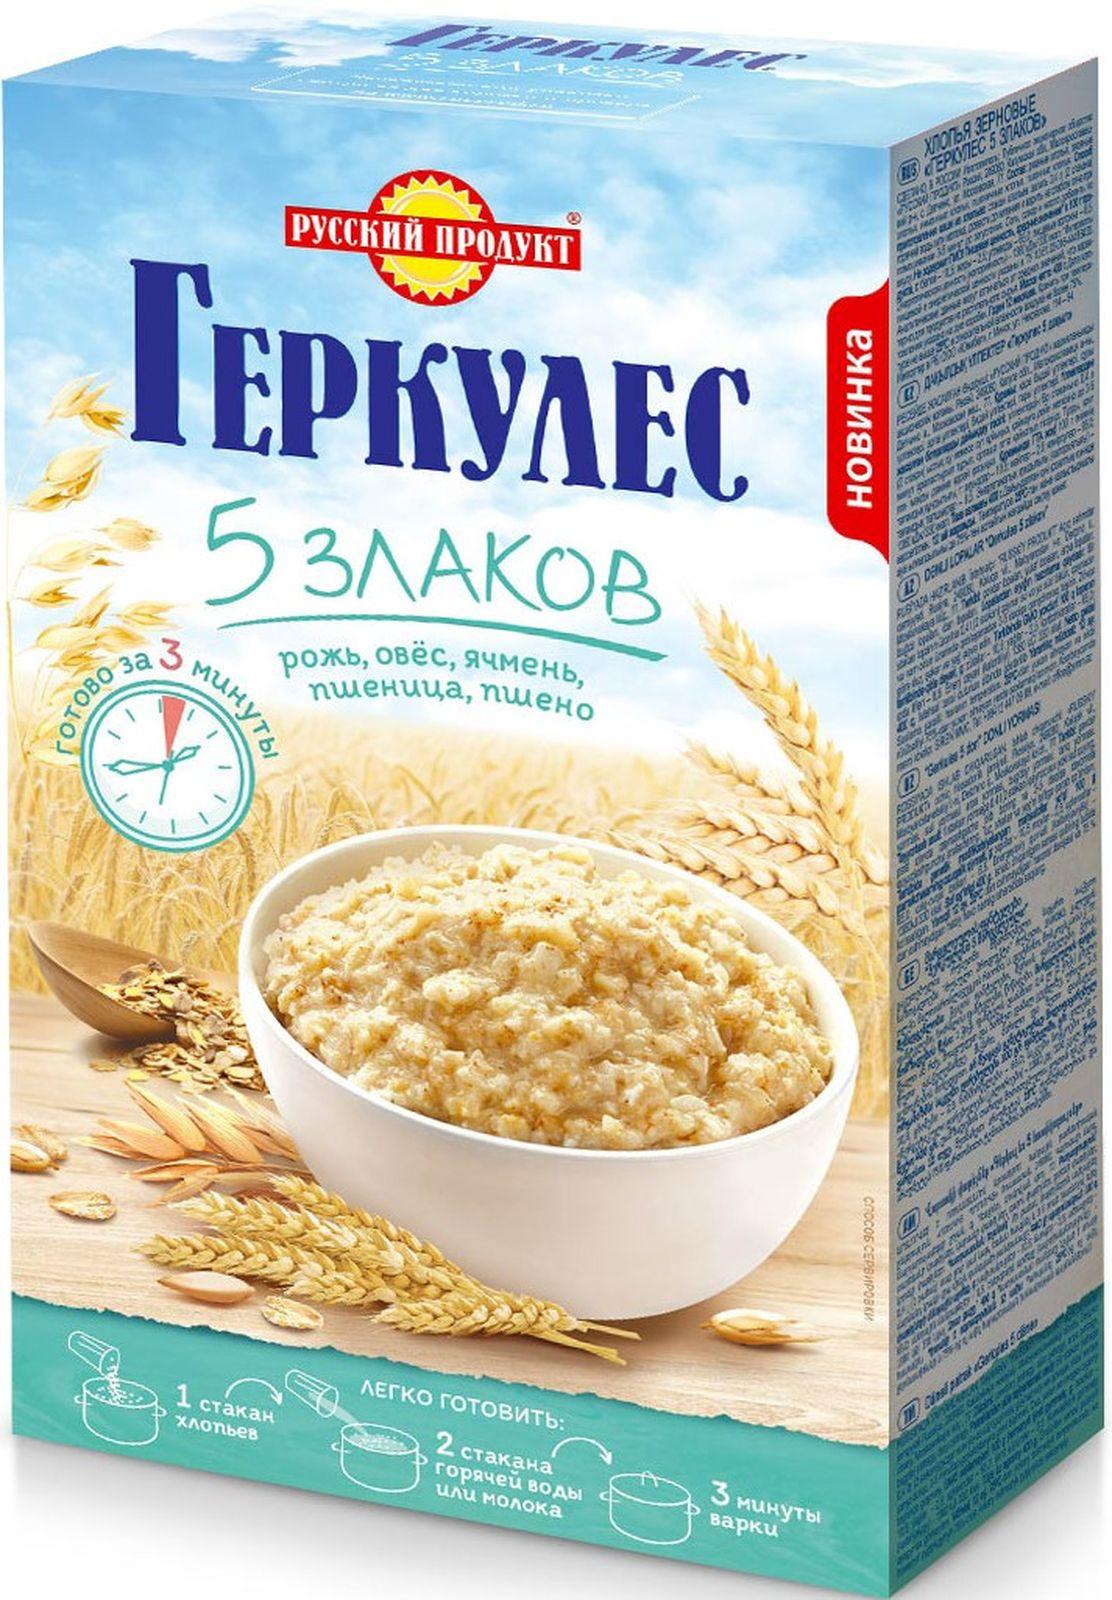 Готовый завтрак Русский продукт Геркулес 5 злаков, 400 гр., картонная коробка